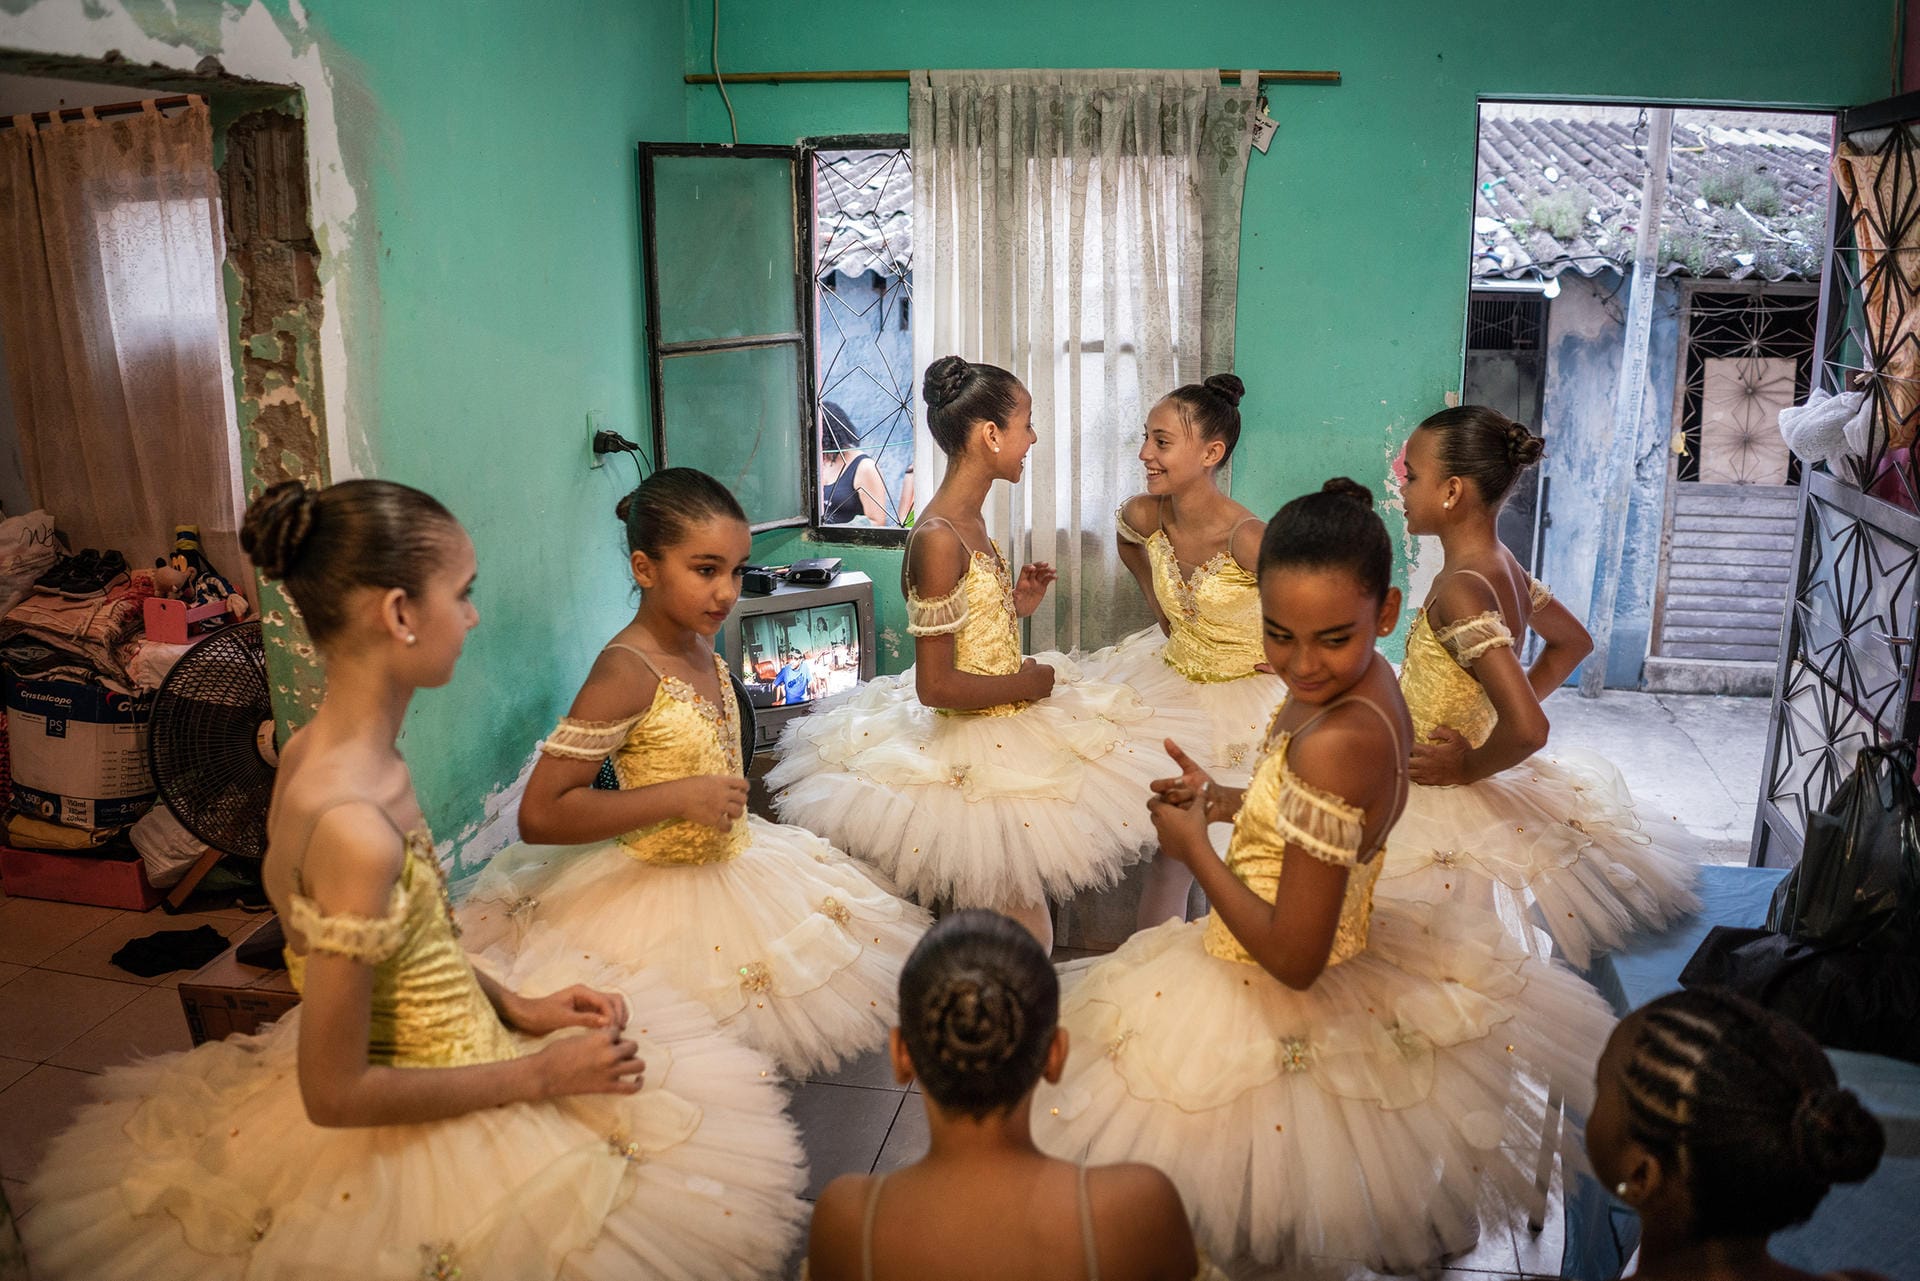 Der Fotograf Evgeny Makarov erhält den dritten Preis. Er begleitete einige Mädchen, die in den Favela Manguinhos, einem Armenviertel von Rio de Janeiro Ballettunterricht erhalten. Eine der besten Tanz-Akademien Brasiliens bietet diesen Ausweg aus dem sonst perspektivlosen Alltag des Armenviertels. Auf dem Bild sind einige der 250 Ballettschülerinnen zu sehen.